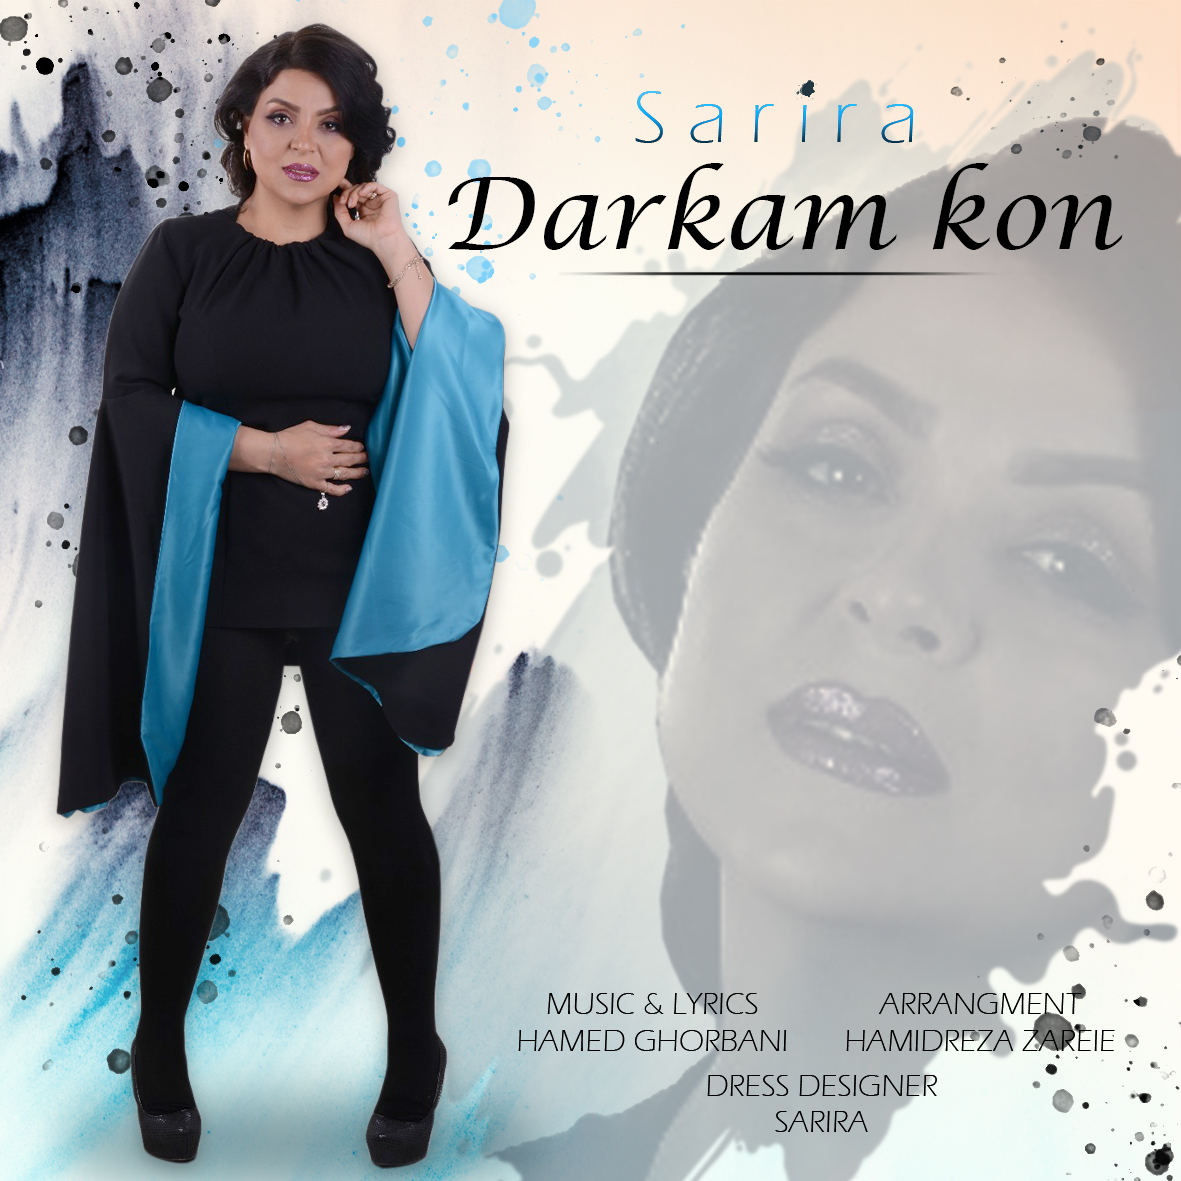  دانلود آهنگ جدید سریرا - درکم کن | Download New Music By Sarira - Darkam Kon